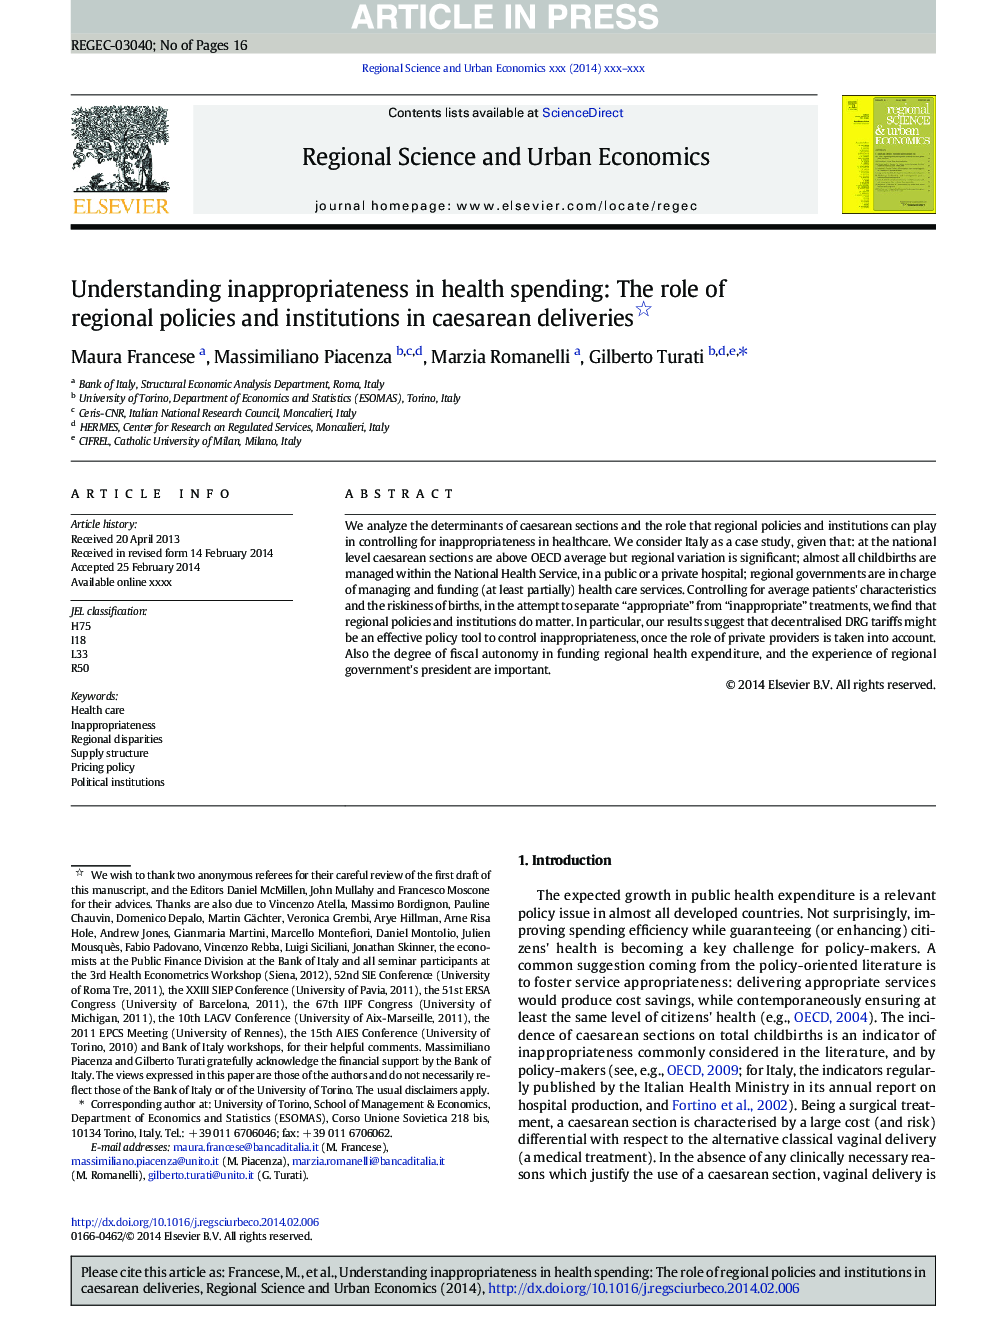 درک ناپذیری در هزینه های بهداشتی: نقش سیاست های منطقه ای و موسسات در تحویل سزارین 